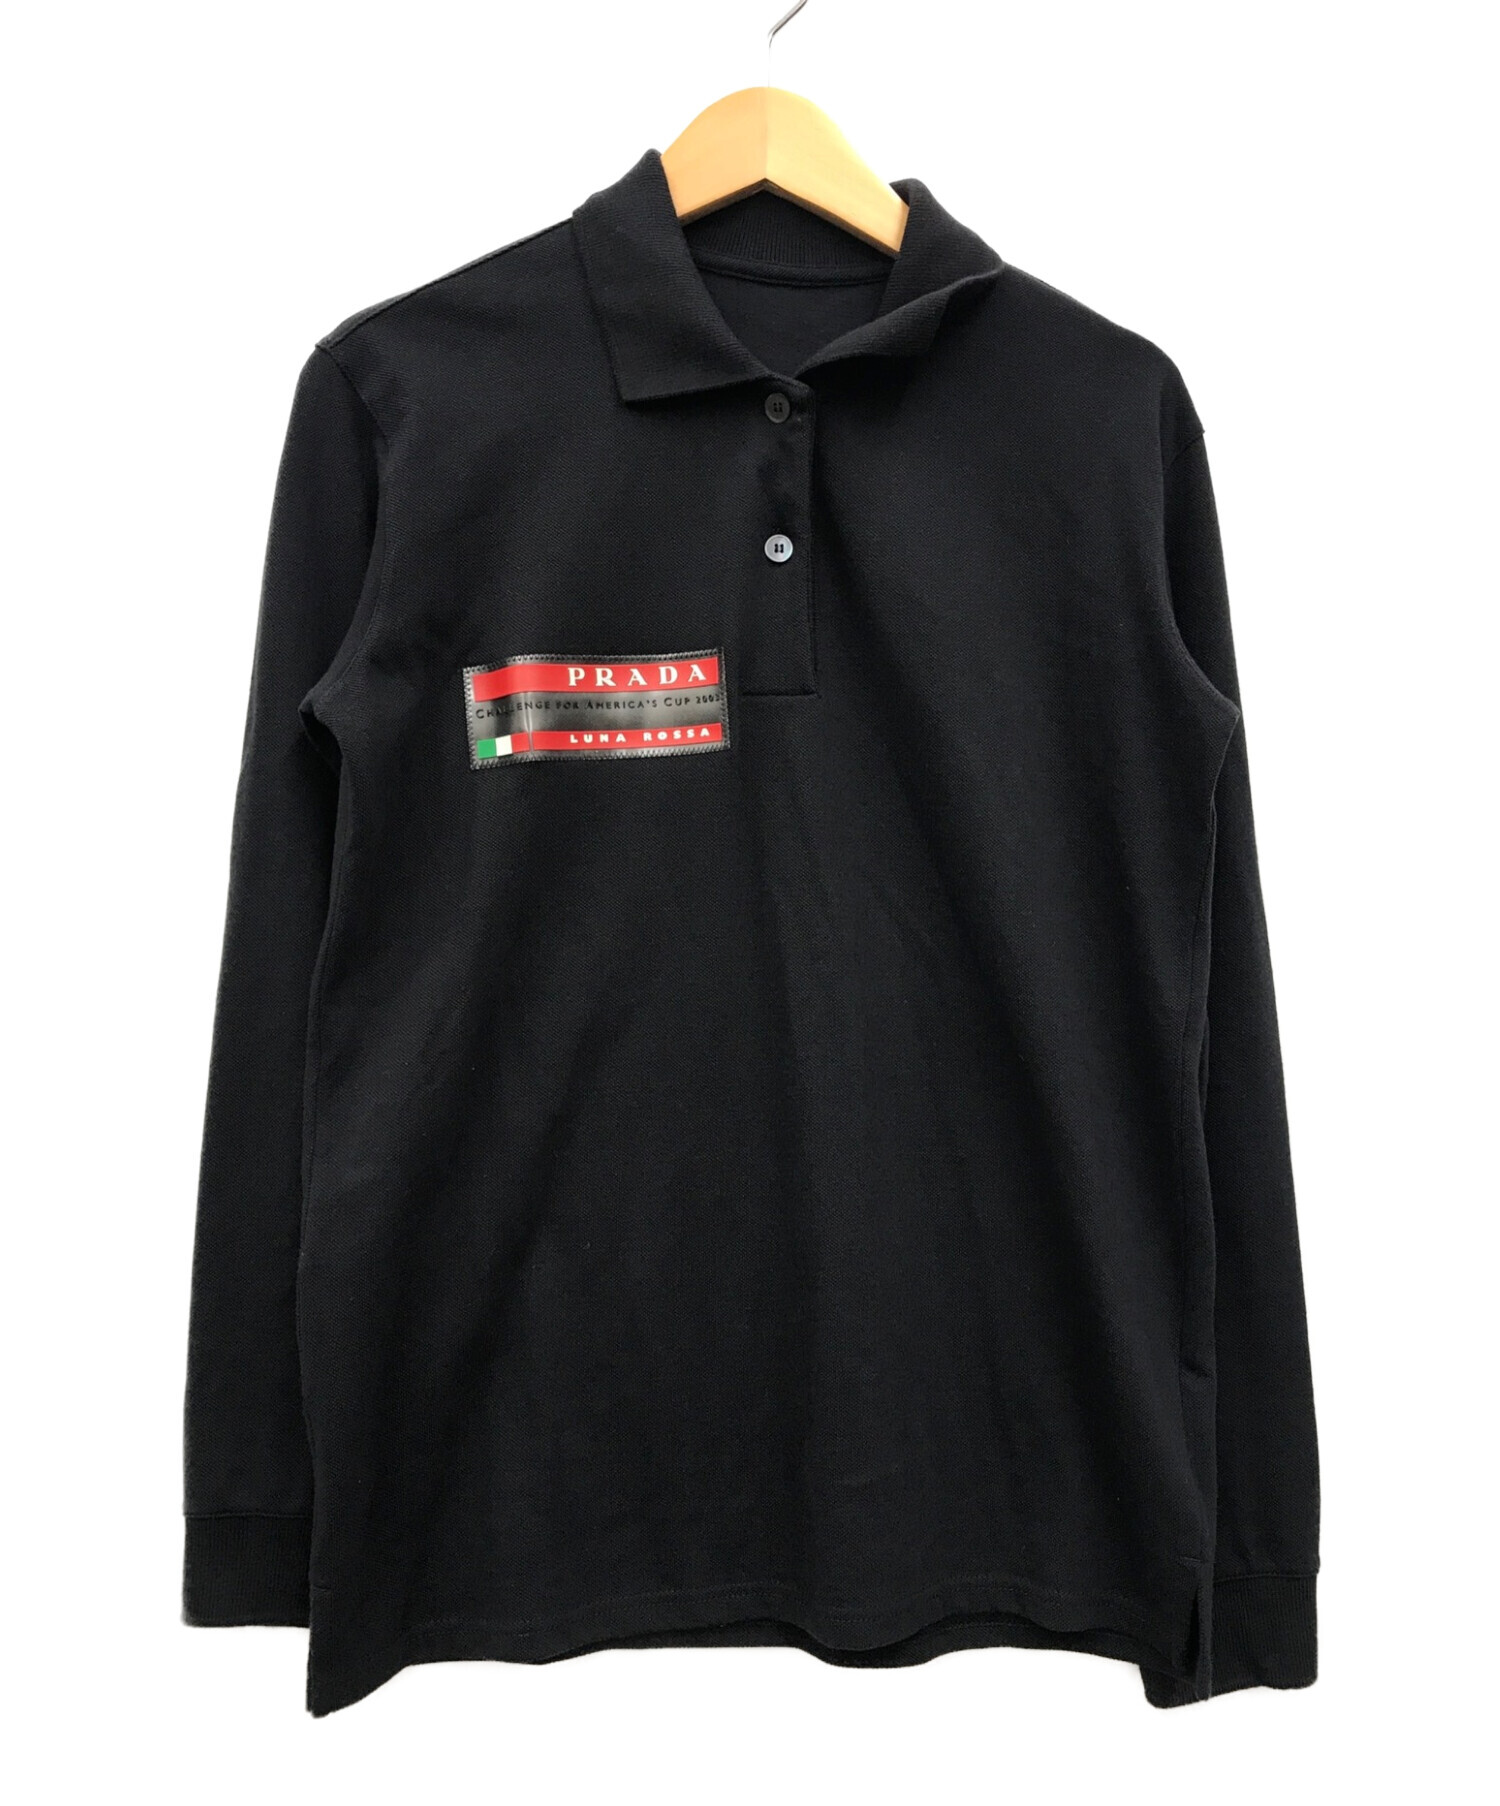 プラダ スポーツ ポロシャツ ブラック Sサイズ | www.hartwellspremium.com